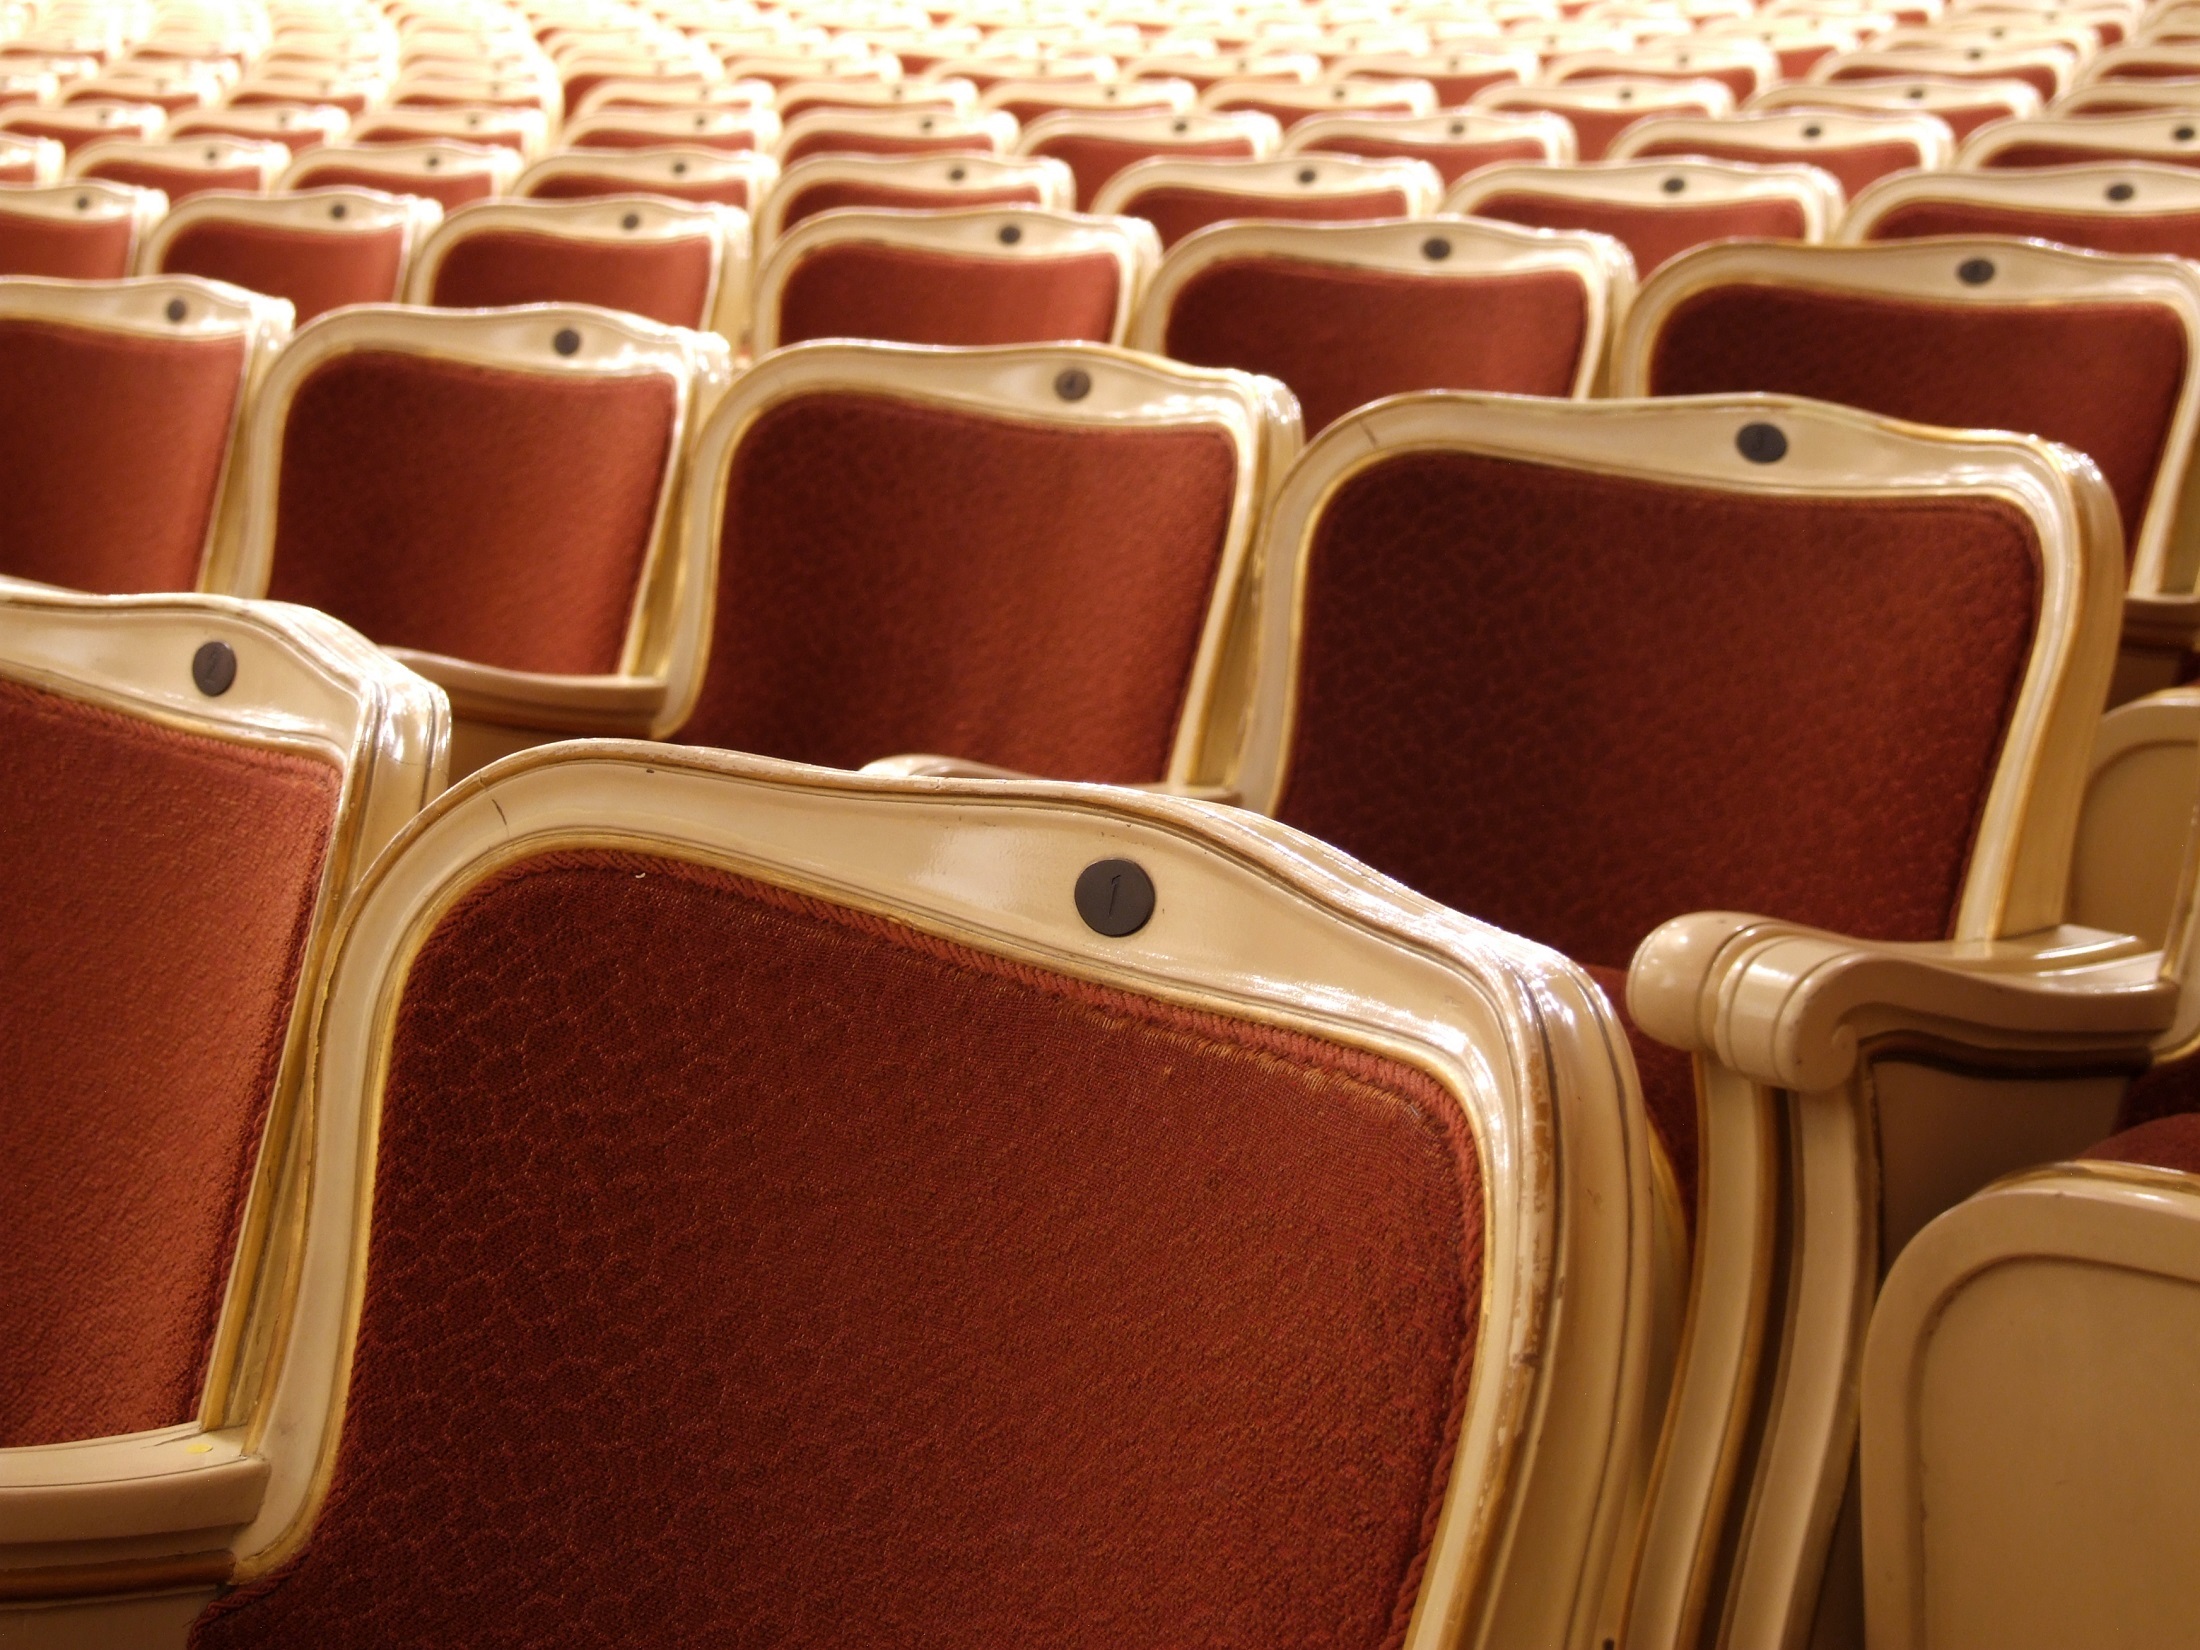 Theater seating. Кресла в театре. Зрительный зал кресла. Кресла в зрительном зале. Театральные кресла в зале.